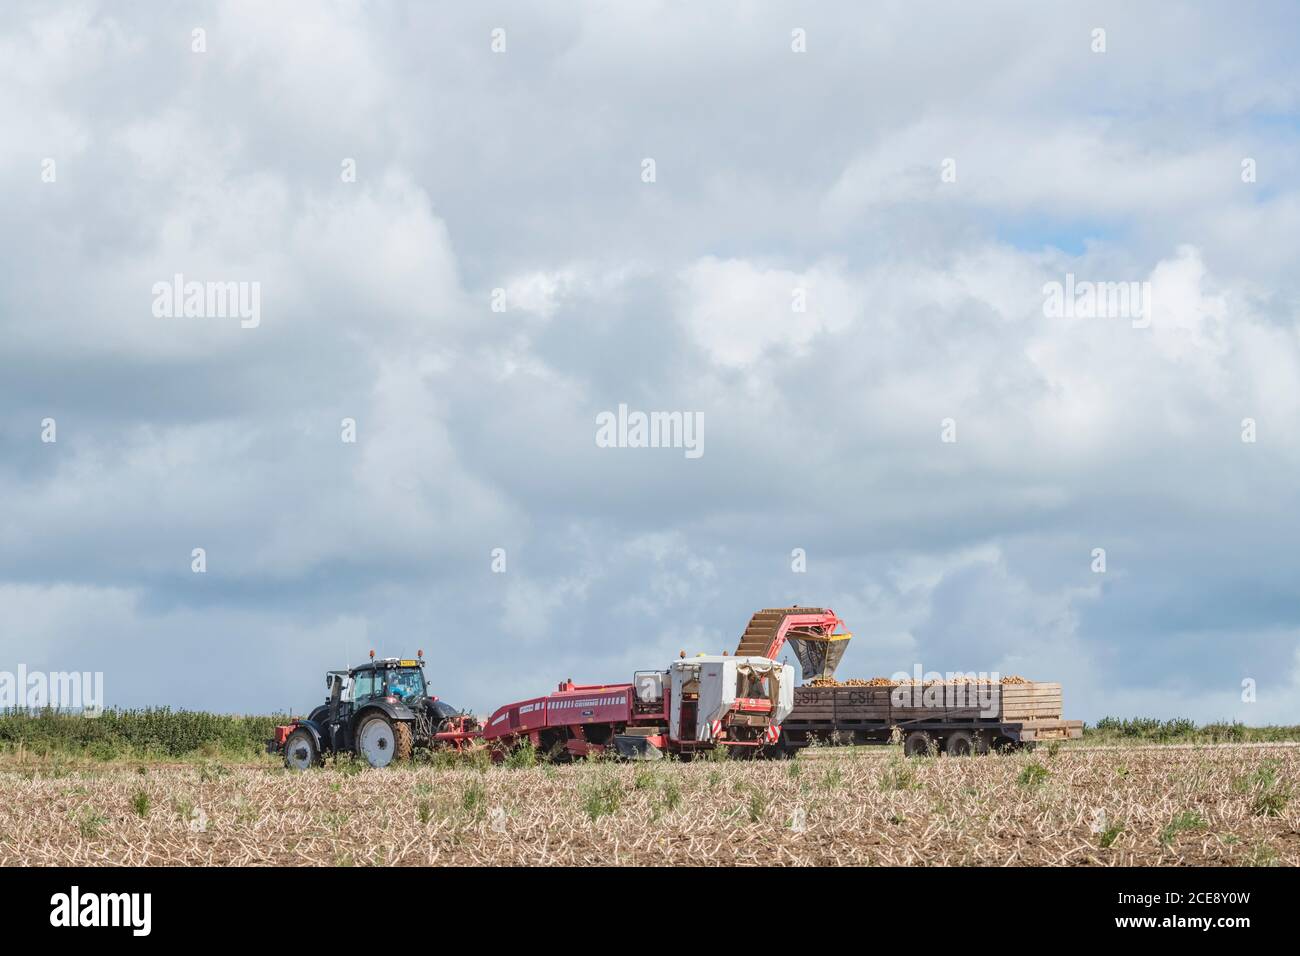 2020 UK Kartoffelernte mit Grimme Kartoffelerntemaschine gezogen von Valtra Traktor, gegen wolkig blaue Skyline gesetzt. Britische Lebensmittelerzeuger. Stockfoto